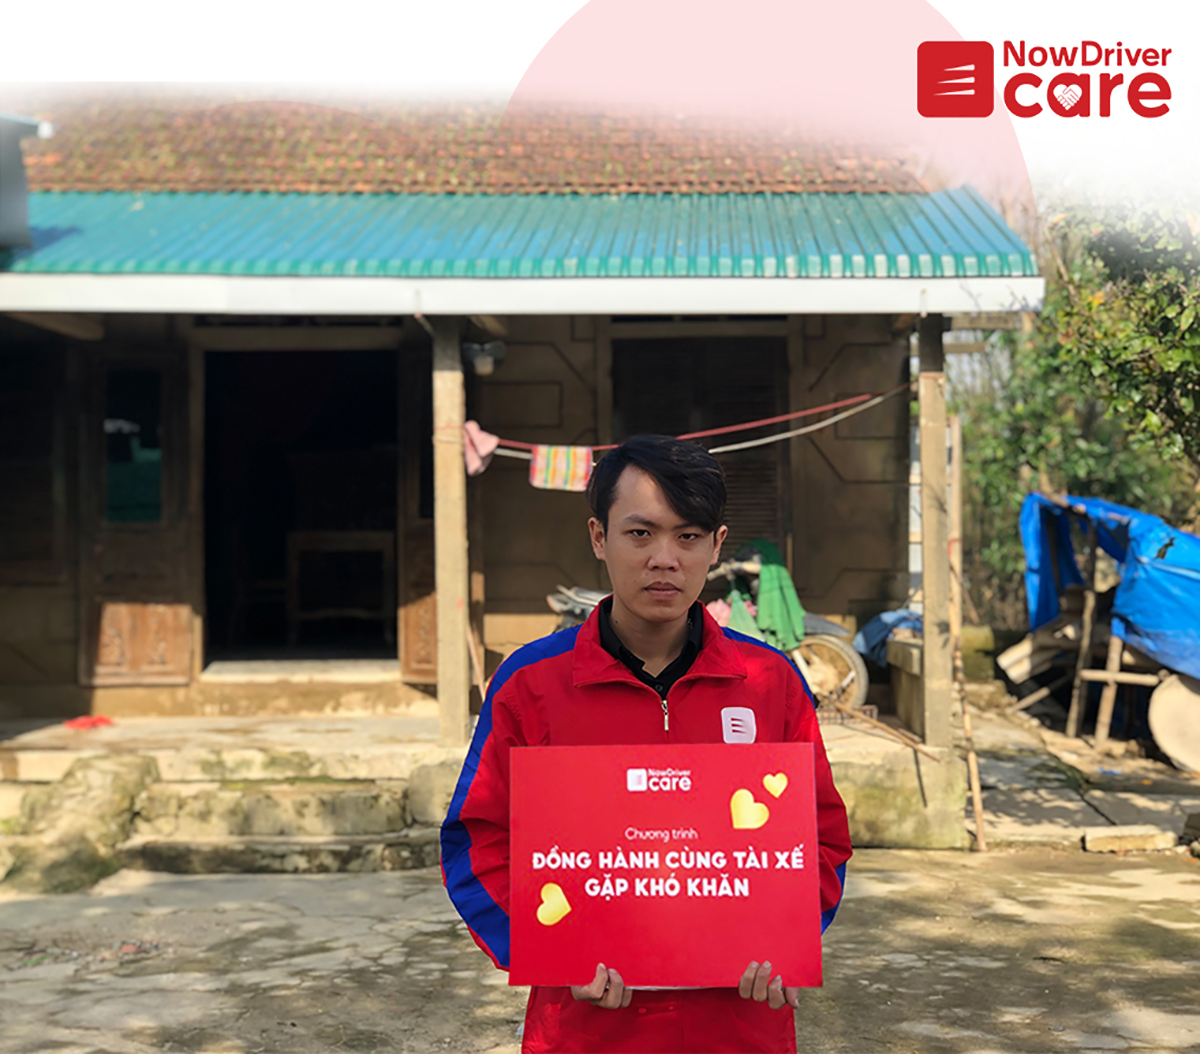  Anh Nguyễn Tý nhận hỗ trợ từ NowDriver Care dành cho tài xế có hoàn cảnh khó khăn